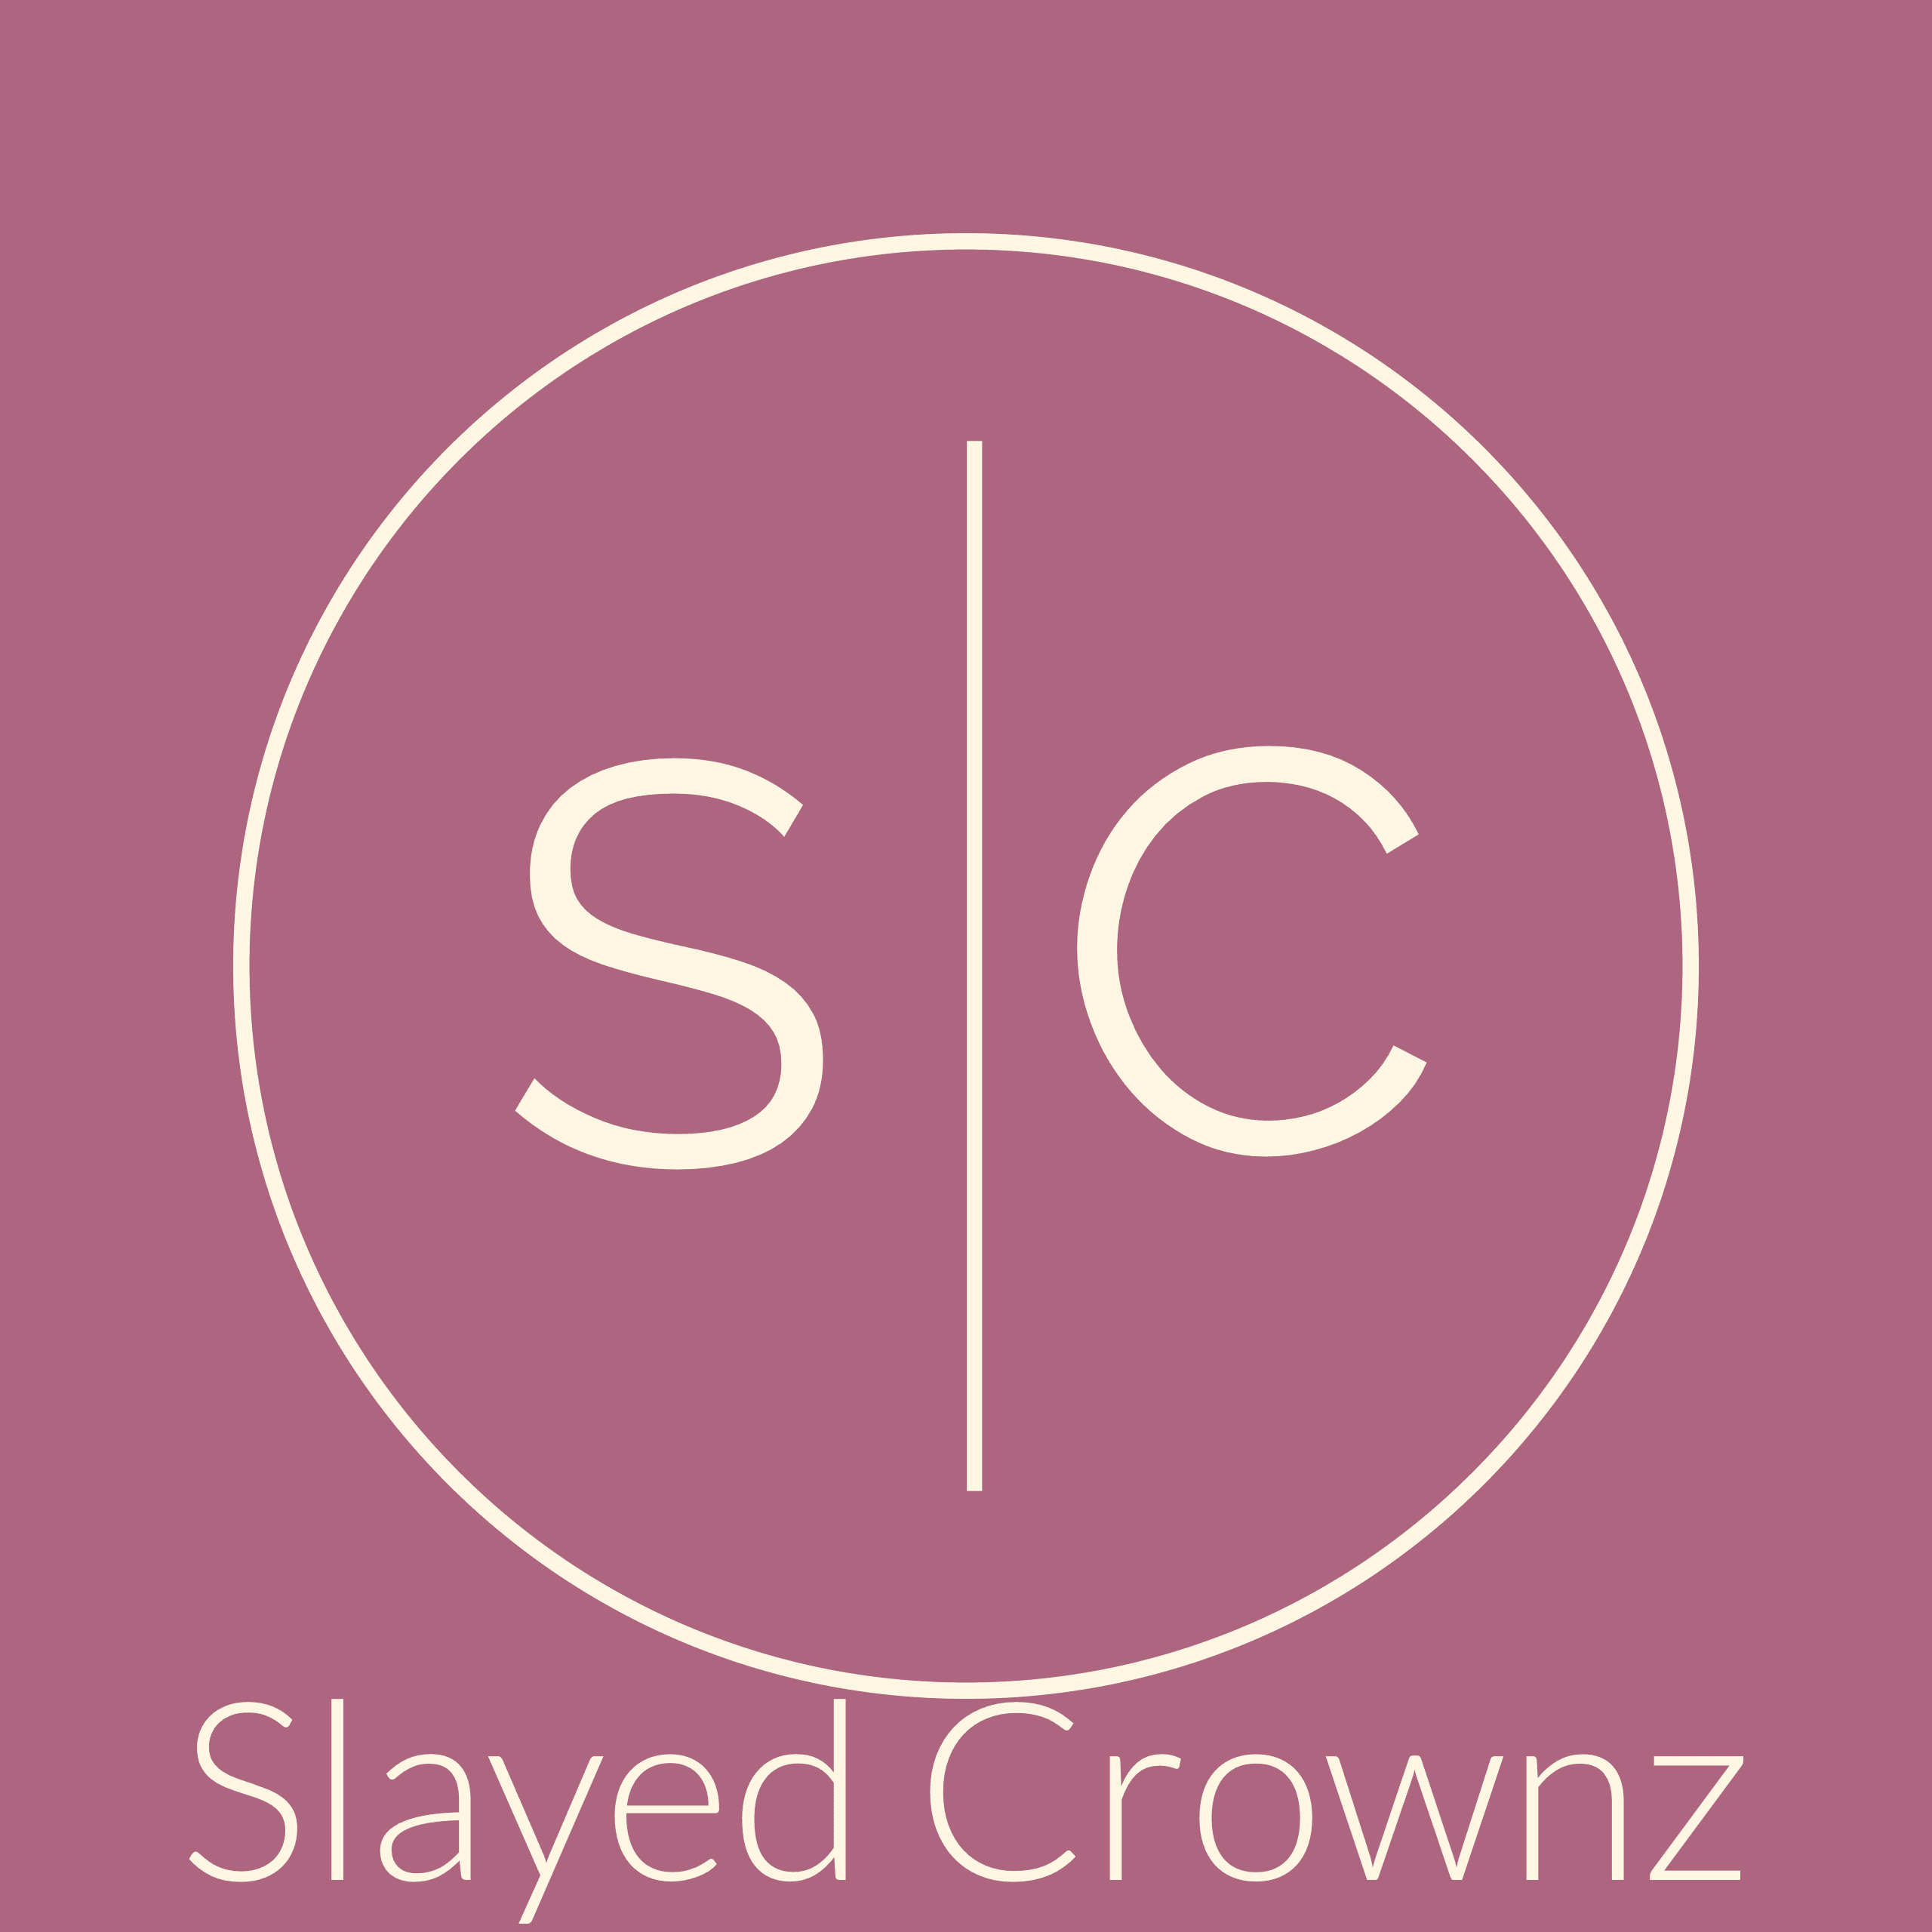 Slayed Crownz